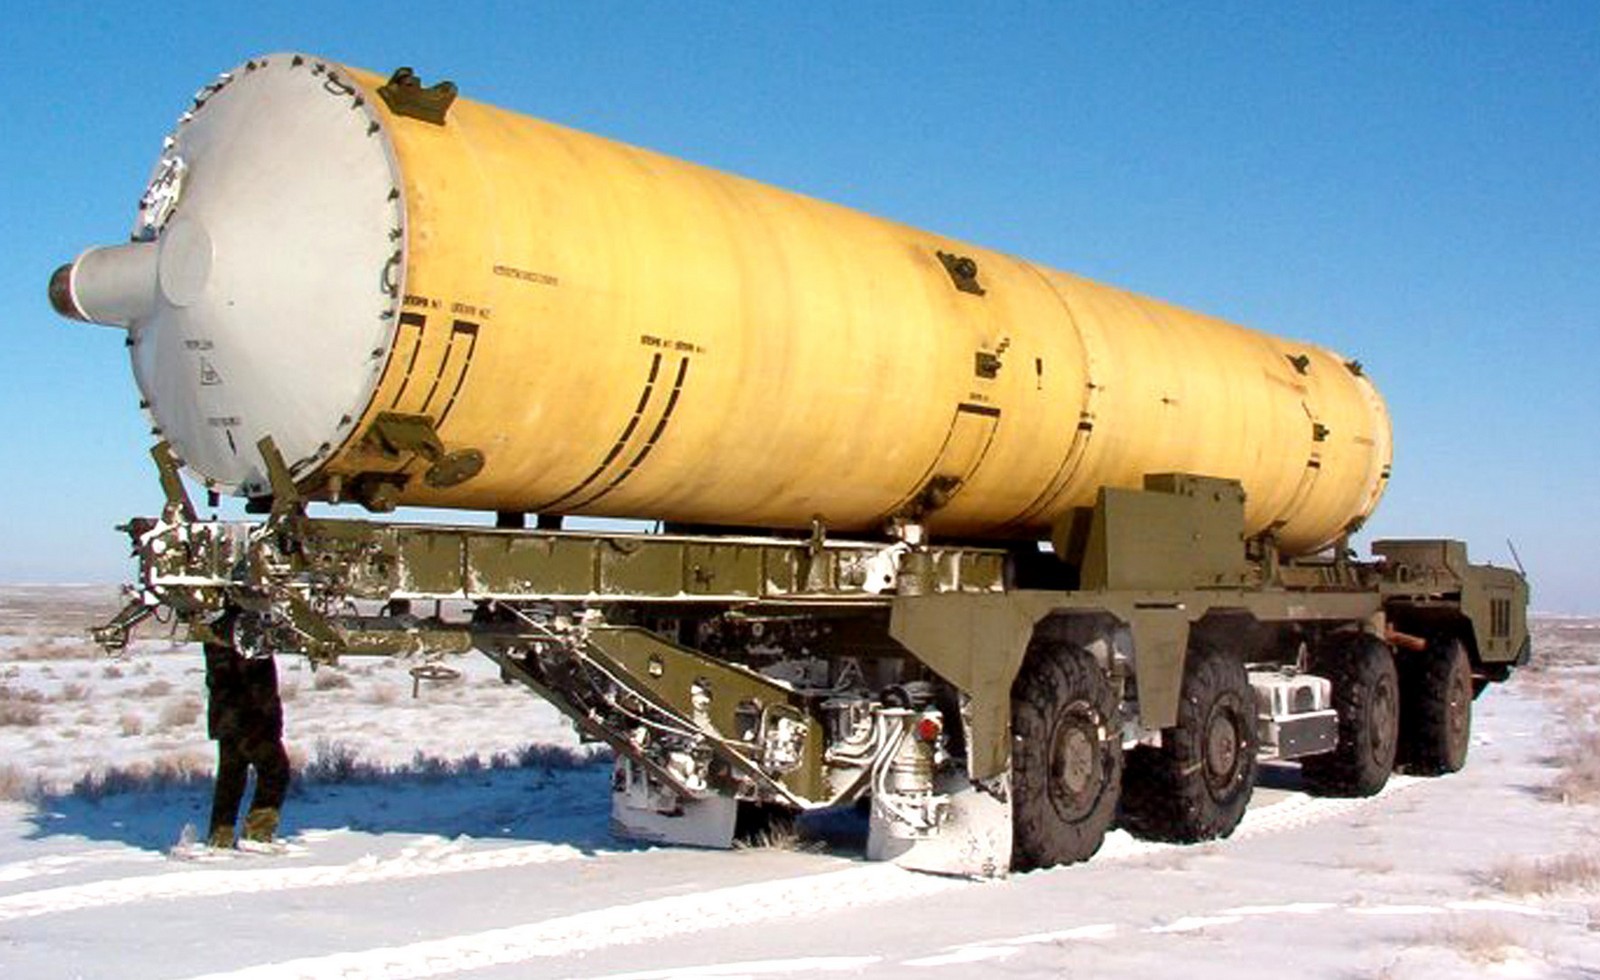 Агрегат 5Т93 с продольной рамой и направляющими для перегрузки ракеты на машину 5Т92 (фото Р. Белозерского)